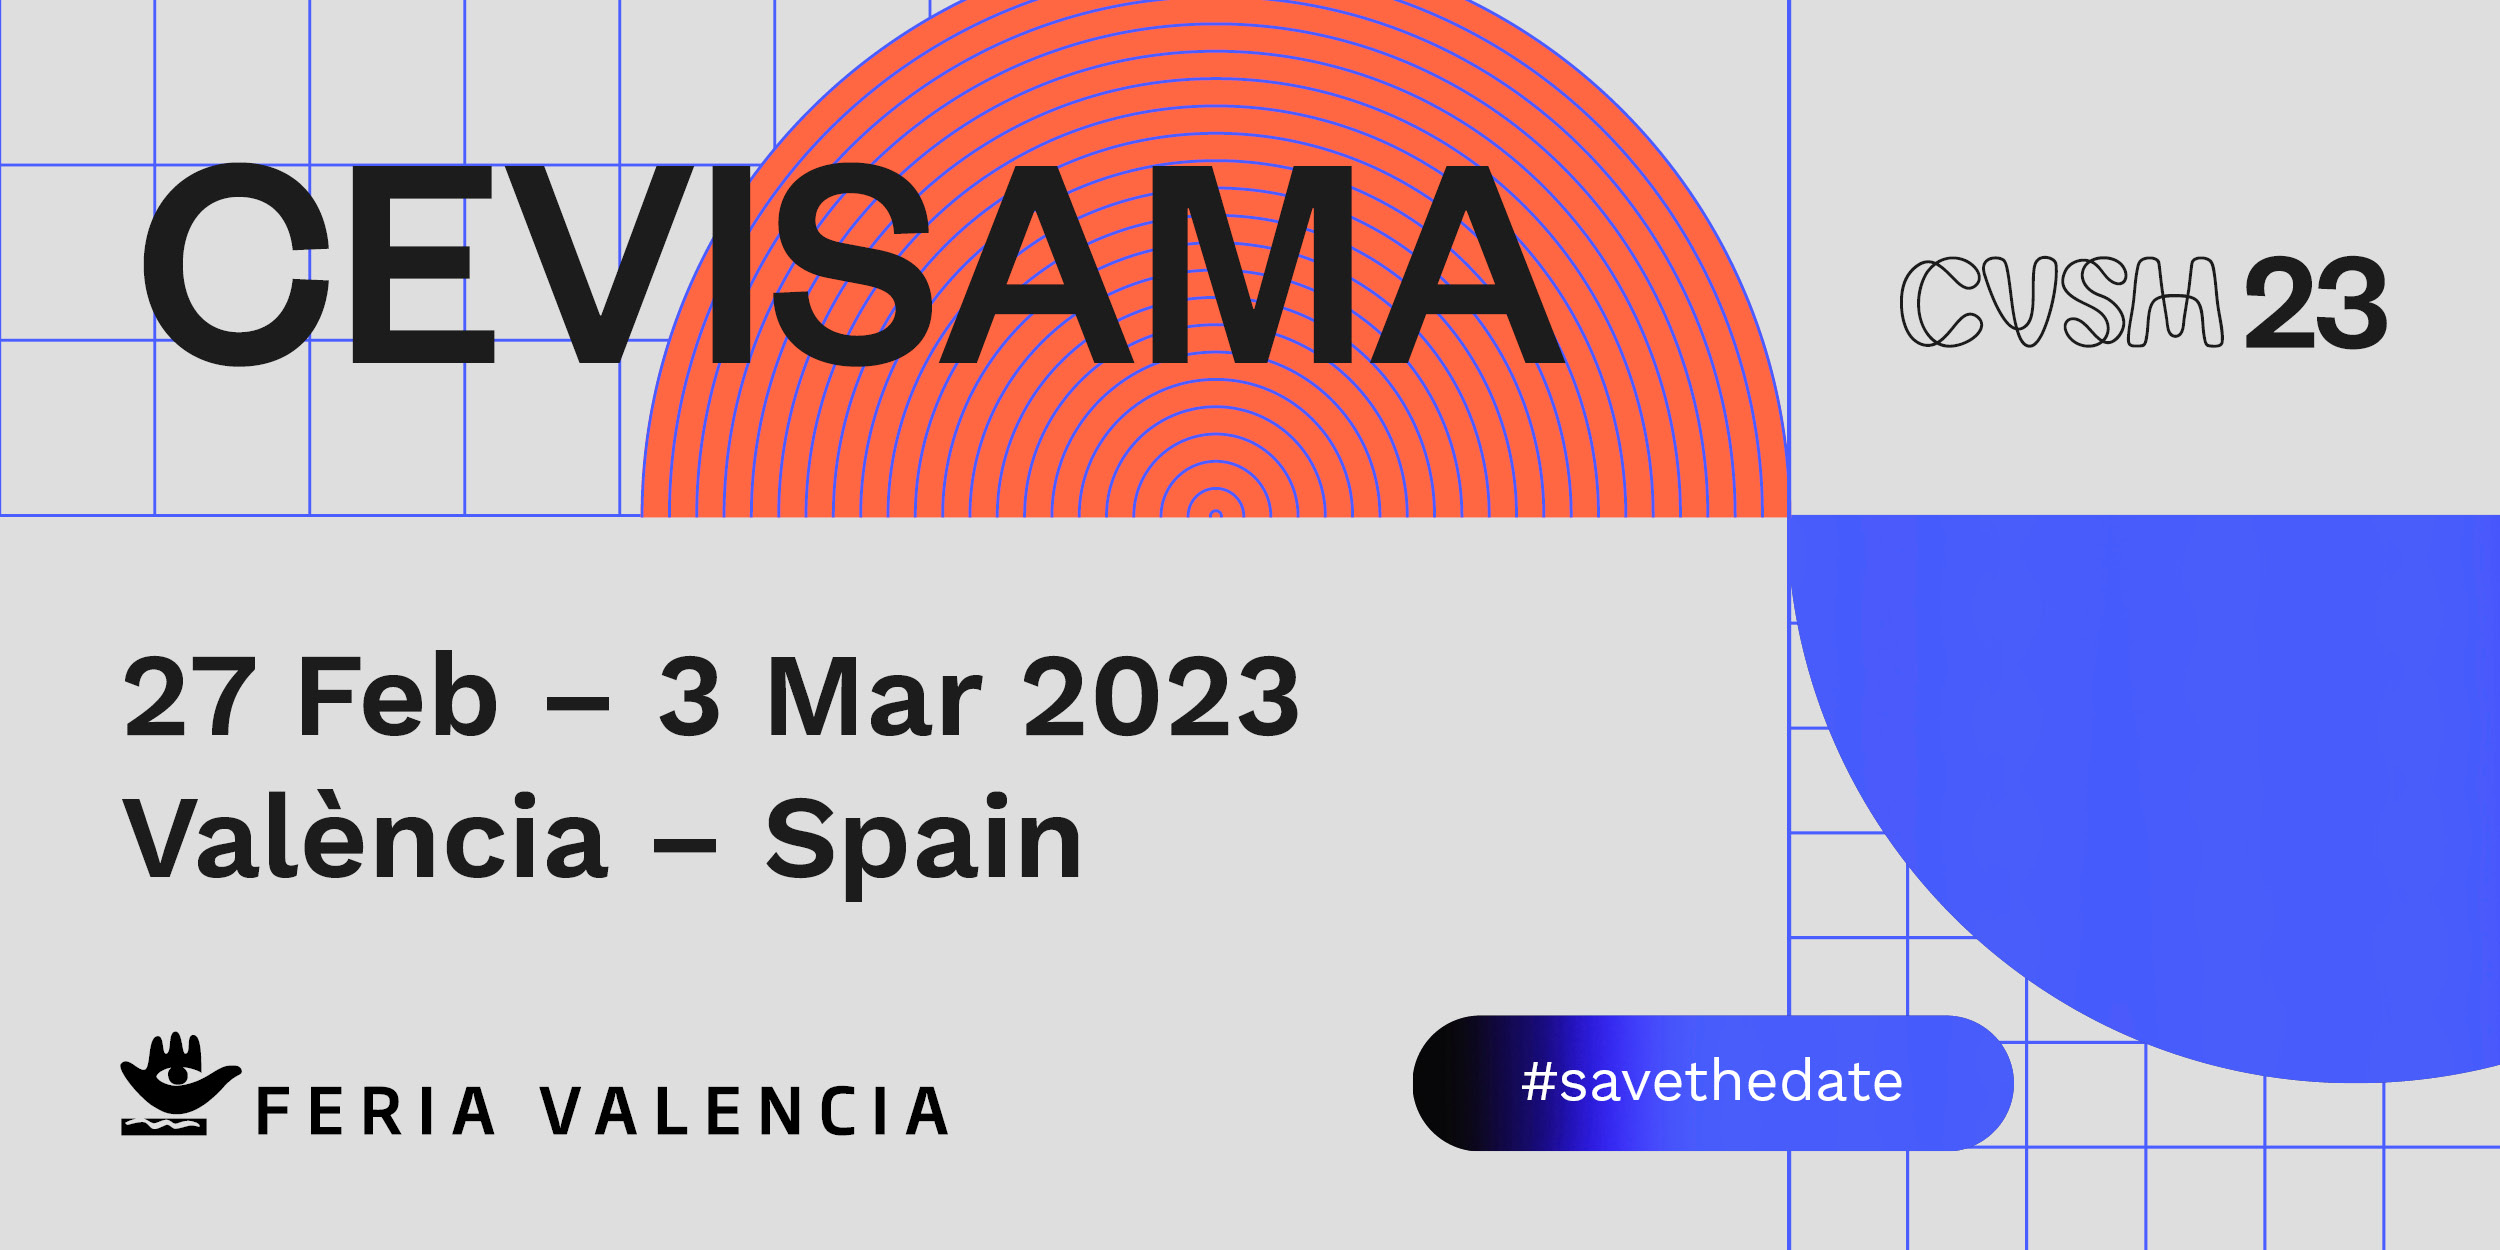 Cevisama 2023 Valencia: here we are!